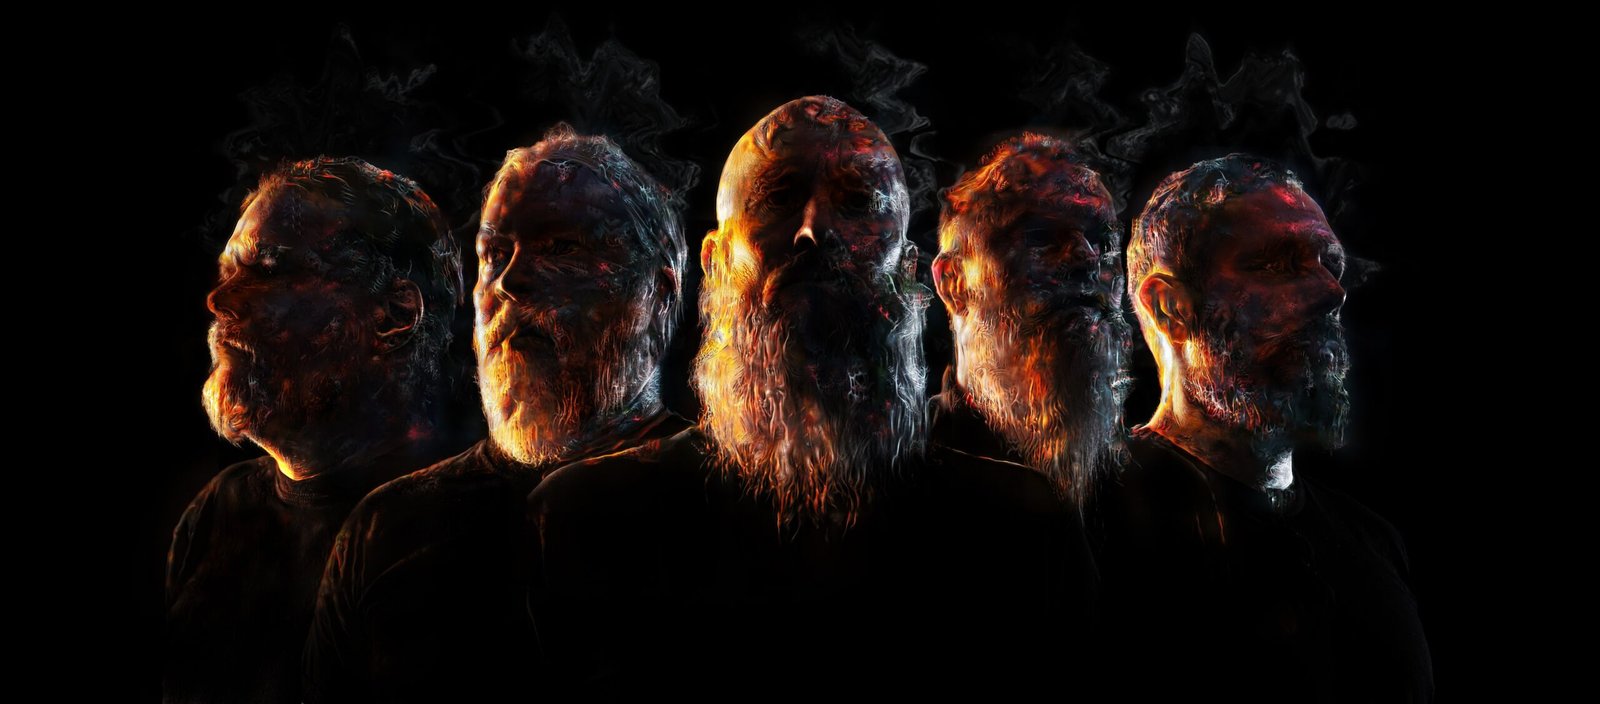 Meshuggah – “Immutable”